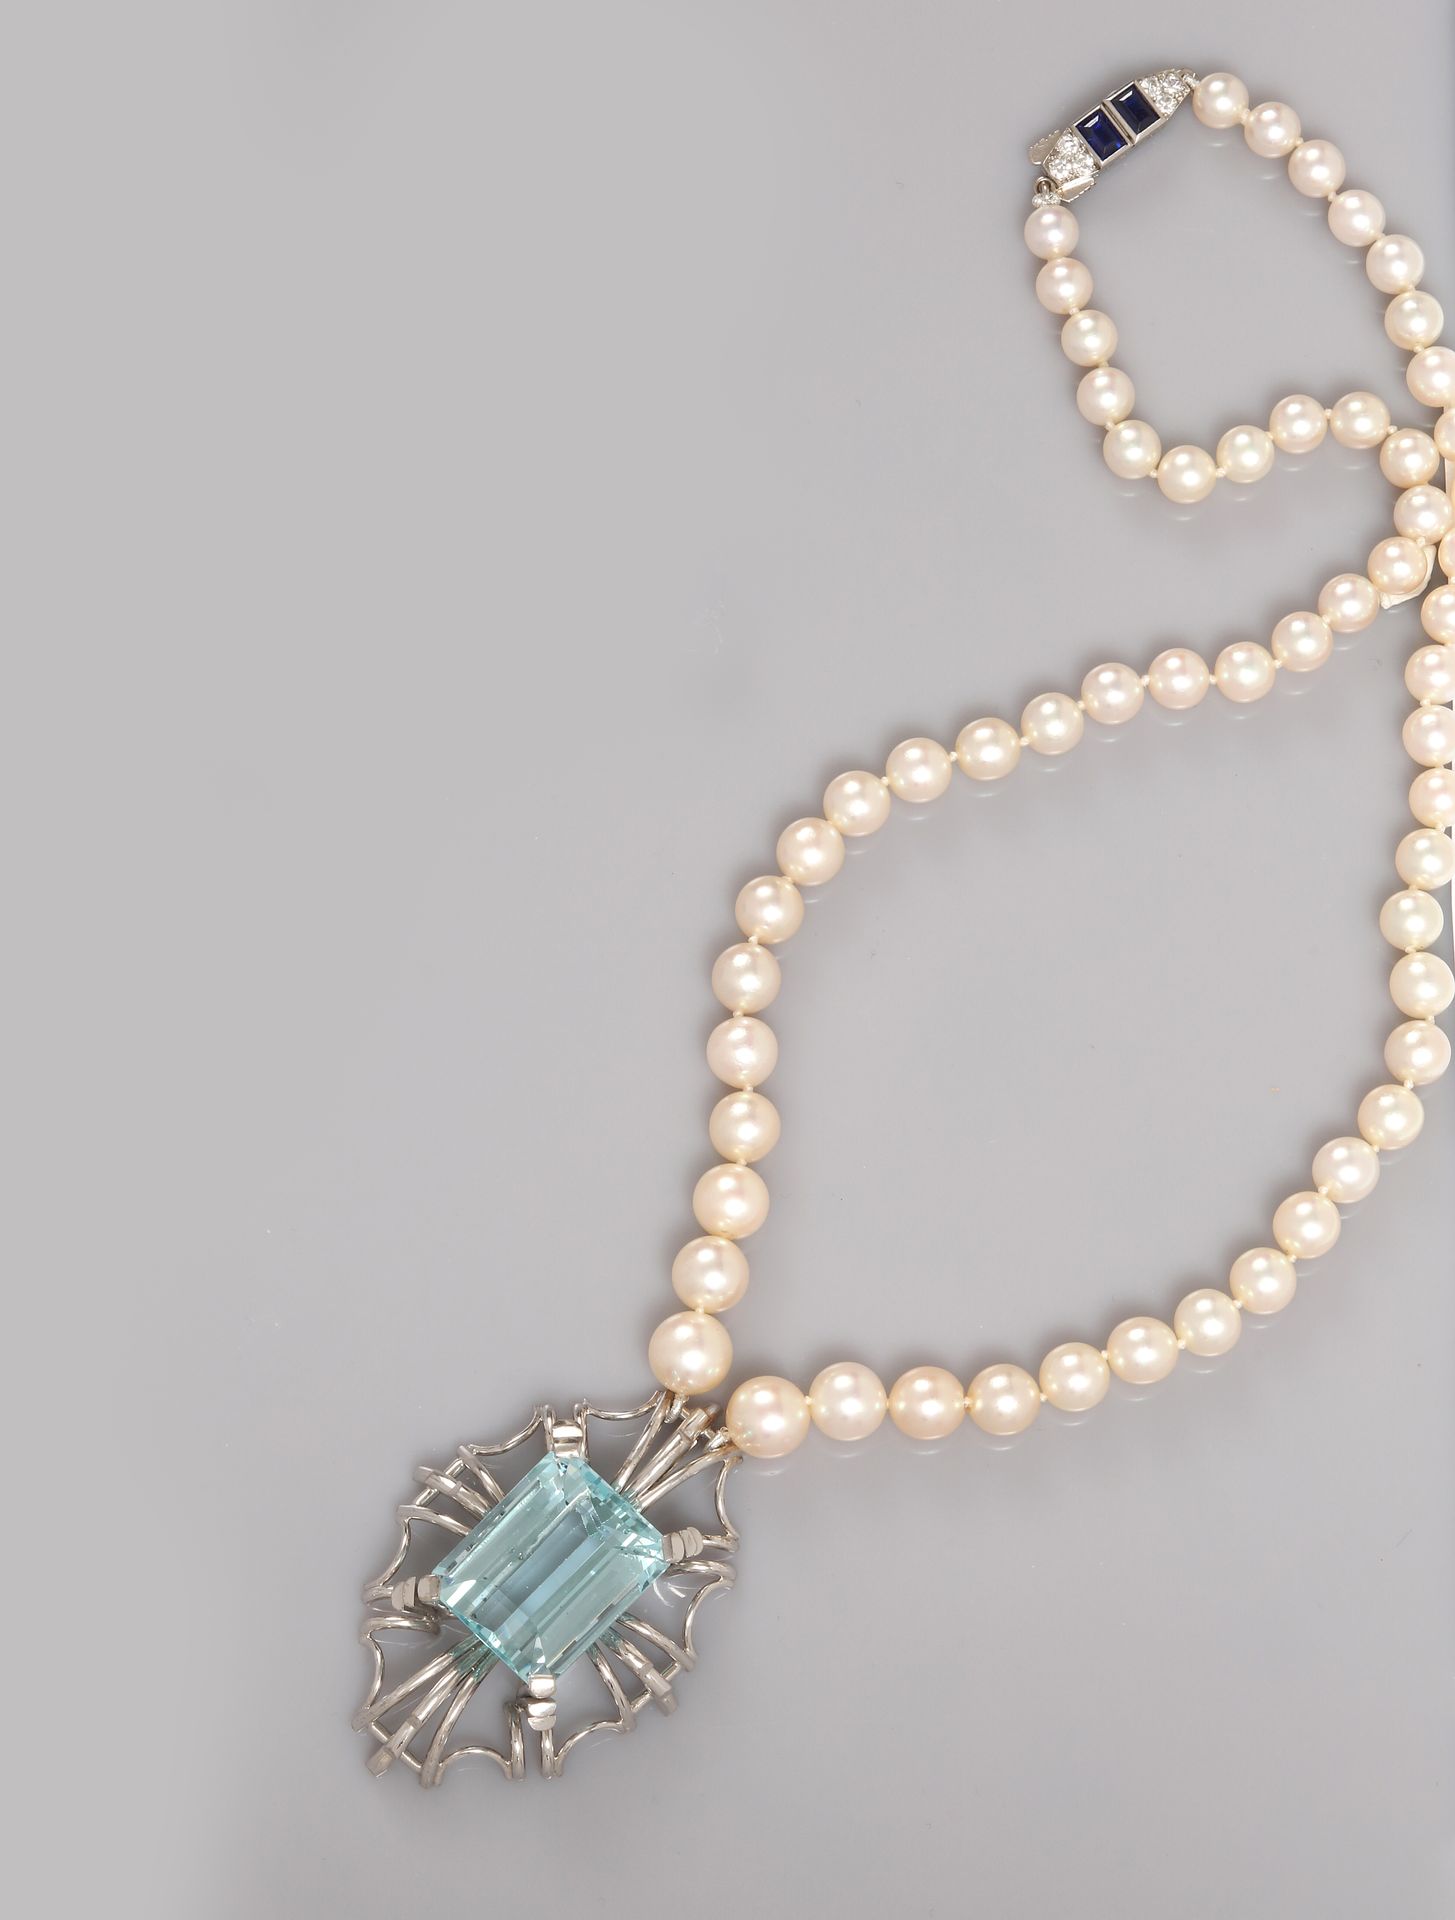 Null 日本浅色养殖珍珠项链，白金扣和吊坠，750毫米，扣子上装饰有切割的蓝宝石和钻石，吊坠为白金材质，围绕一颗重约30克拉的海蓝宝石，长46厘米，重量：60&hellip;